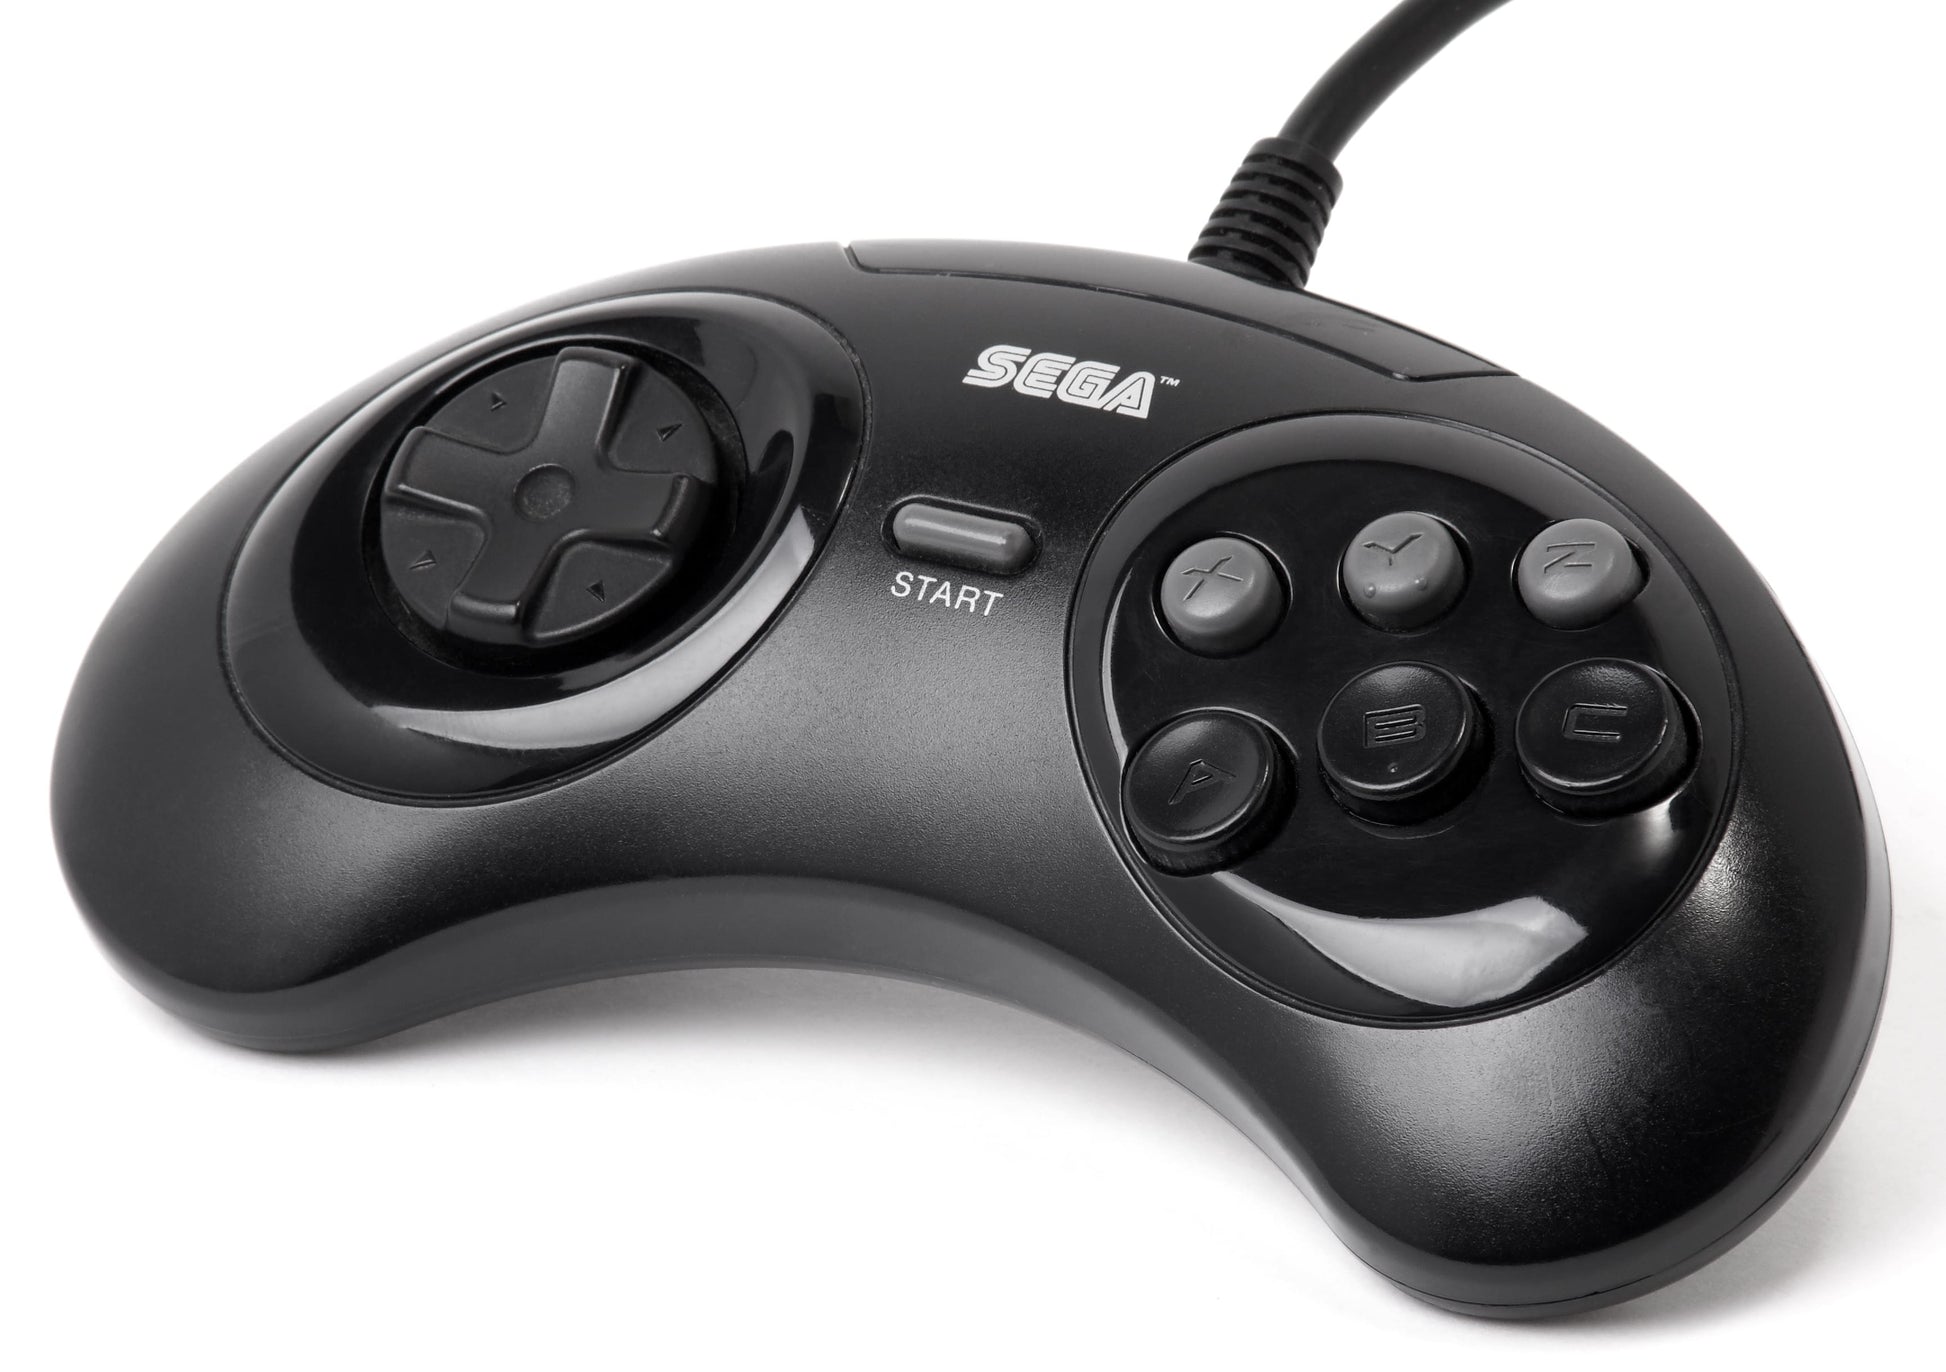 BA Sega Genesis Arcade Controller